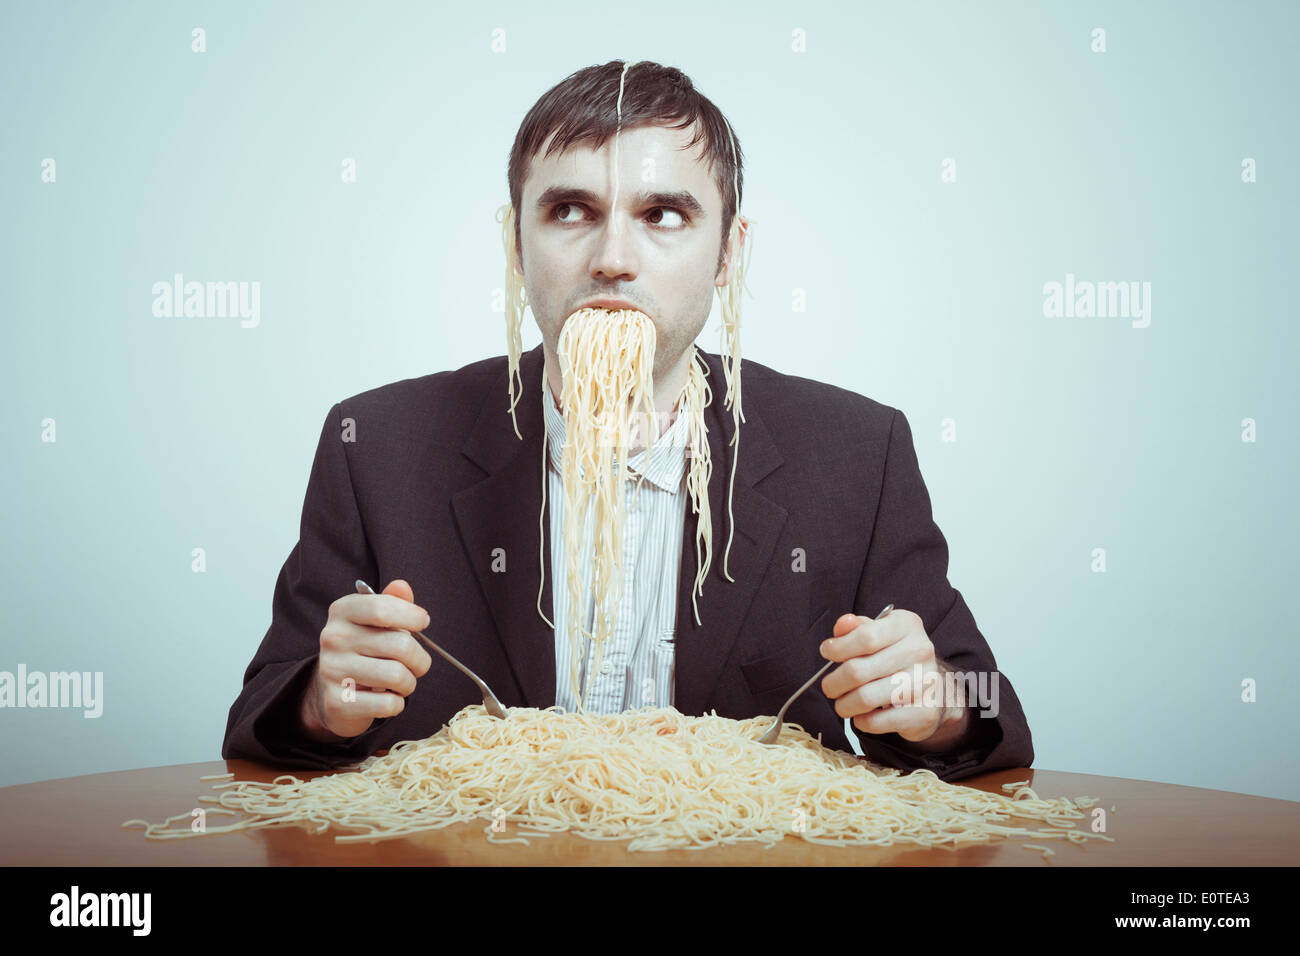 Comer en exceso y el consumismo concepto. Silly empresario desagradable comer pasta. Foto de stock